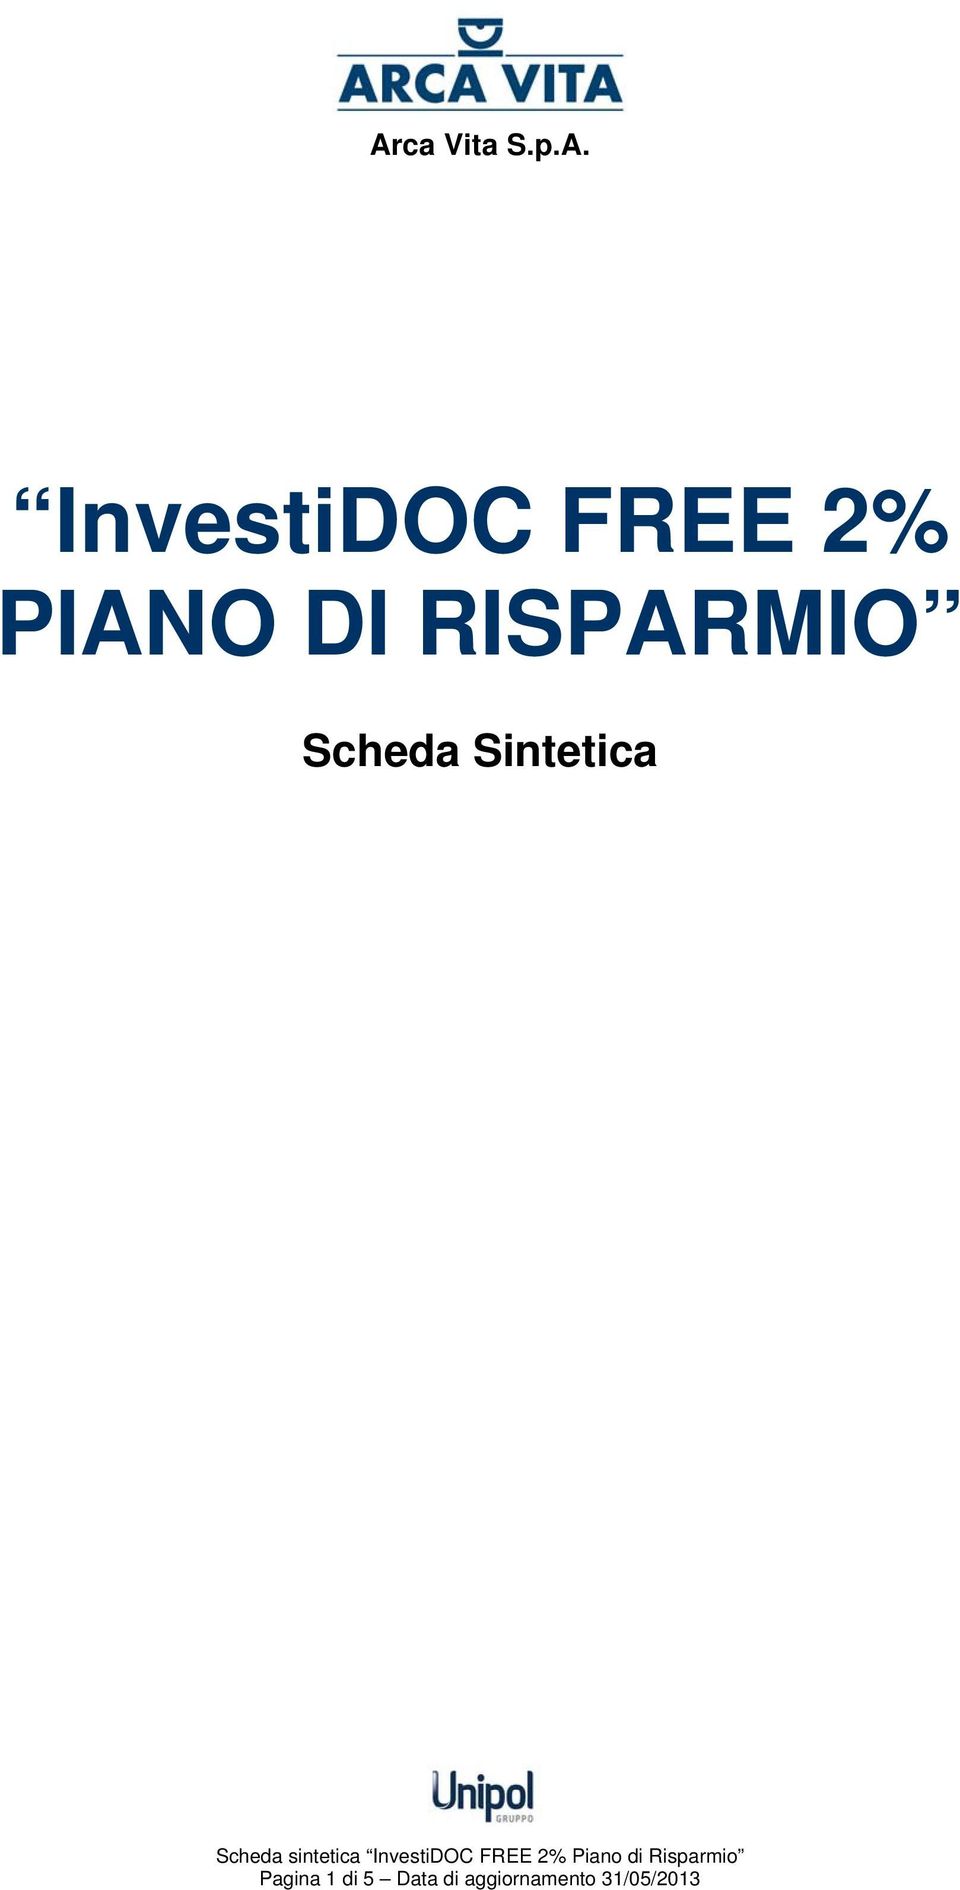 sintetica InvestiDOC FREE 2% Piano di